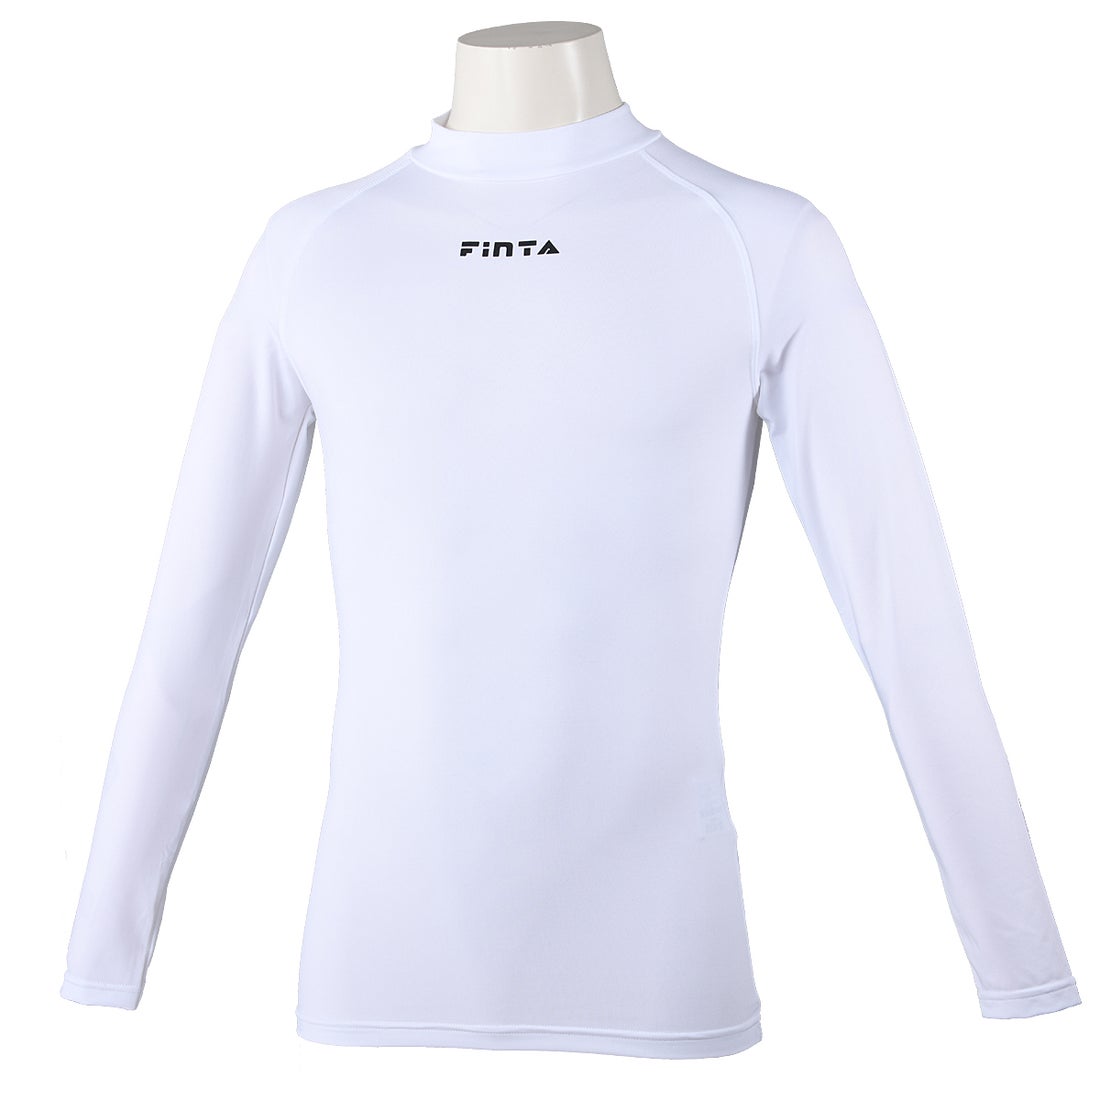 FINTA フィンタ ハイネックインナーシャツ(ホワイト) FTW7027 001 トレーニングウェア -サッカーショップ【SWS】